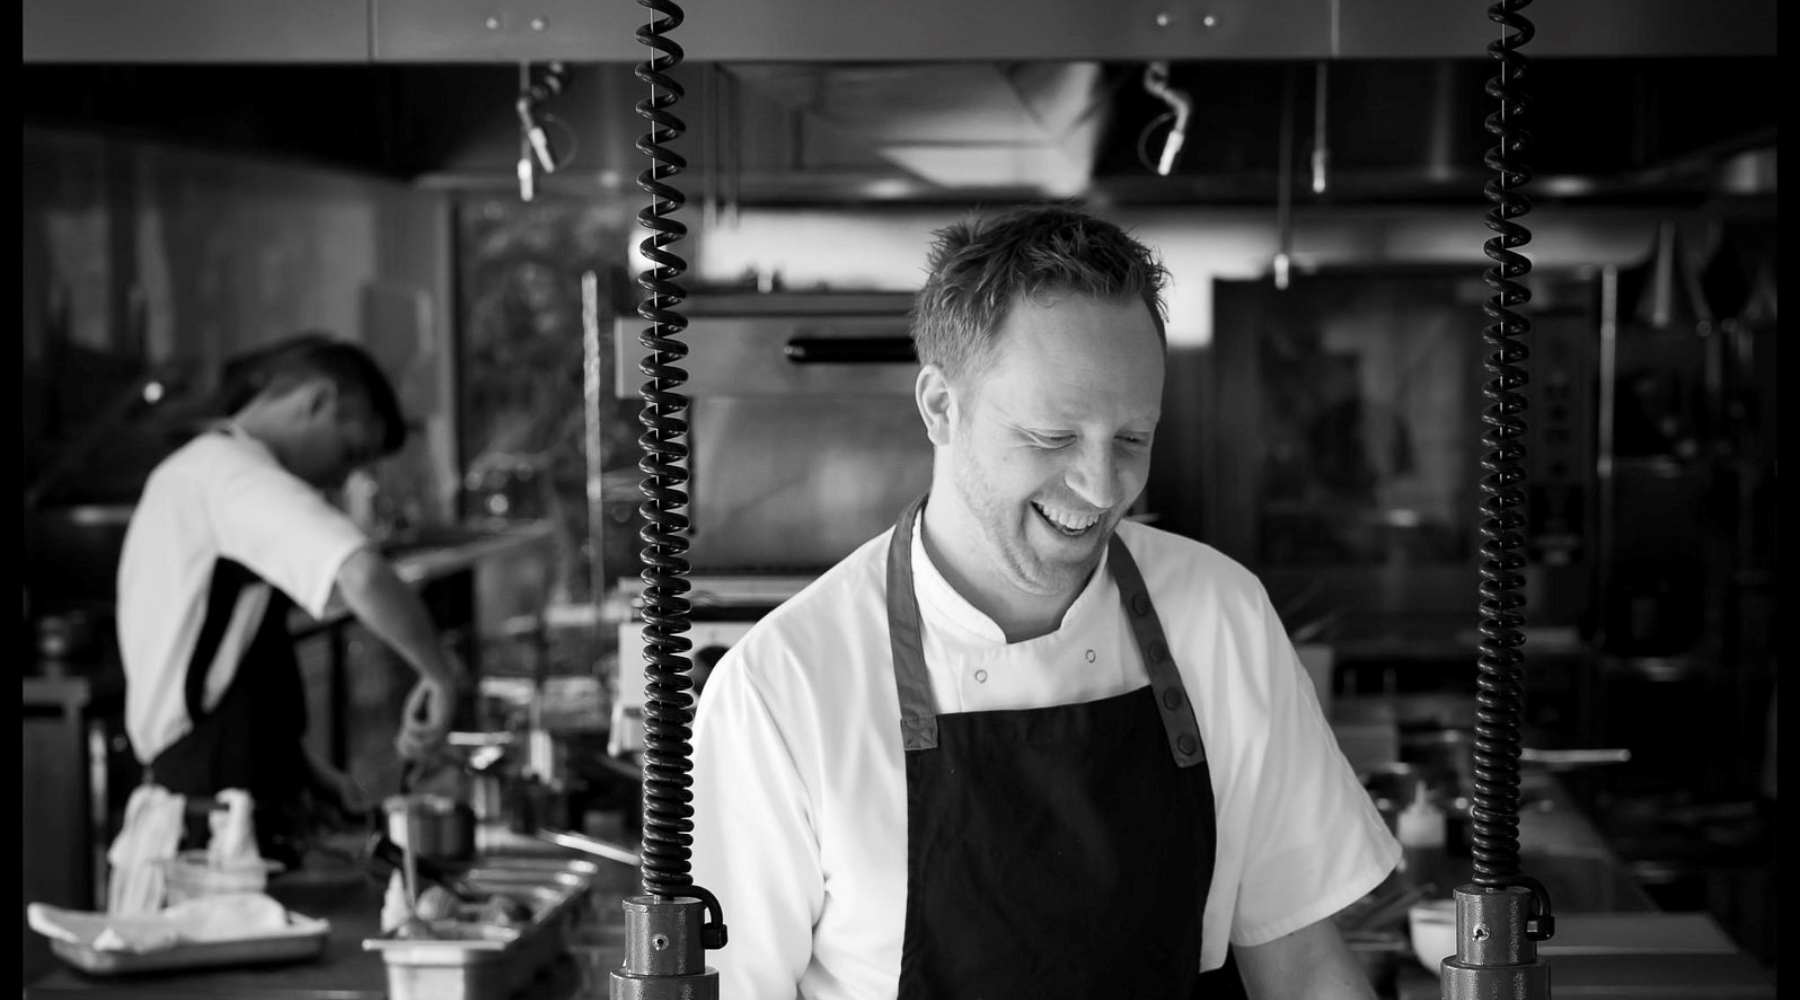 Introducing Nick Edgar, Head Chef at Hambledon Vineyard